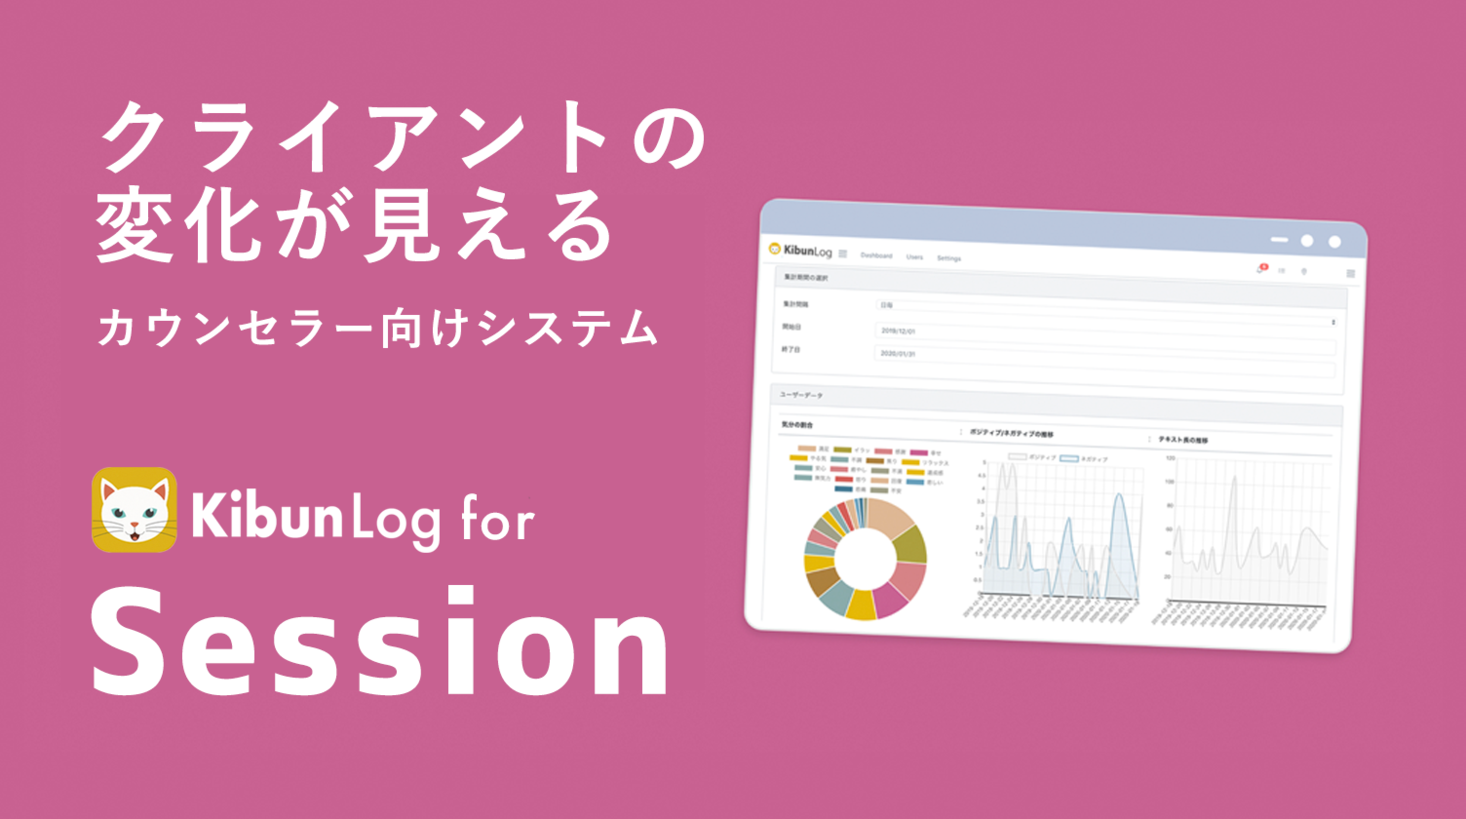 キママニ、カウンセラー向けWebシステム「KibunLog for Session」のベータ版を公開